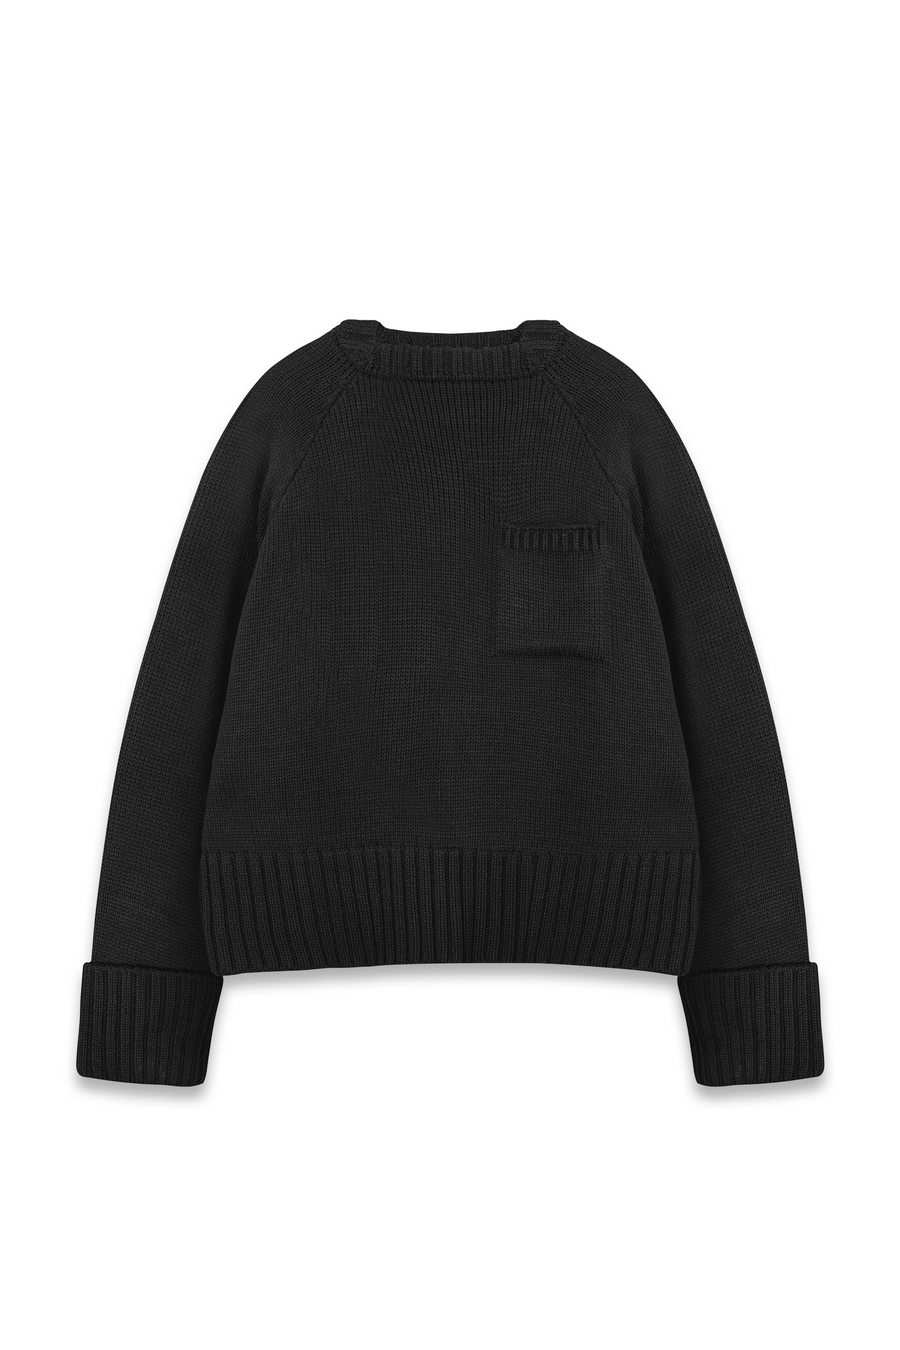 SMITTEN Knit Sweater